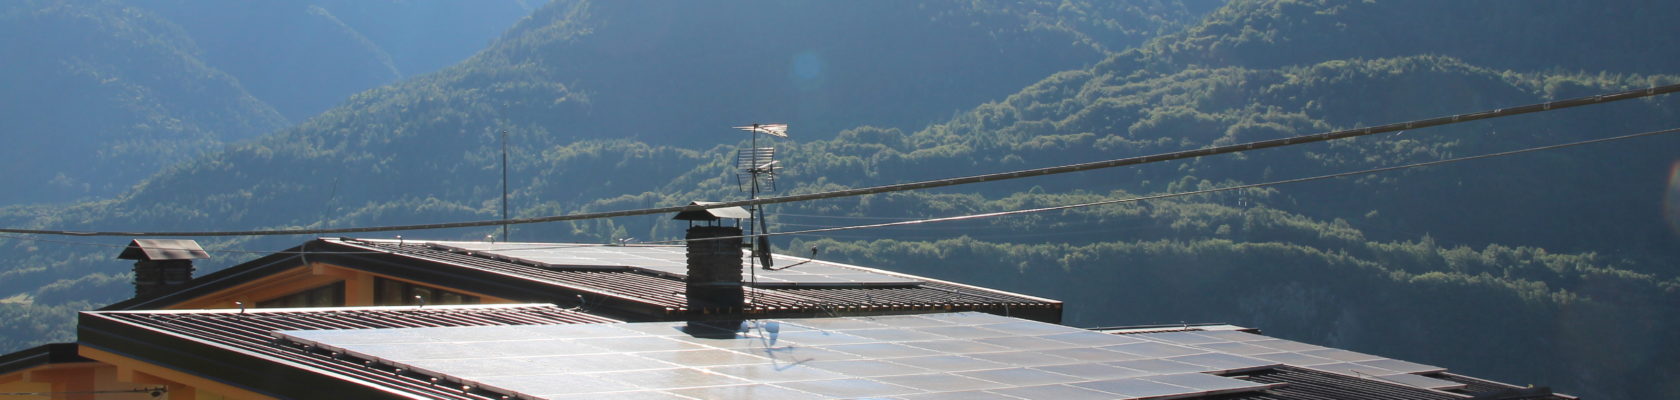 Impianto fotovoltaico ex scuola elementare di Praso